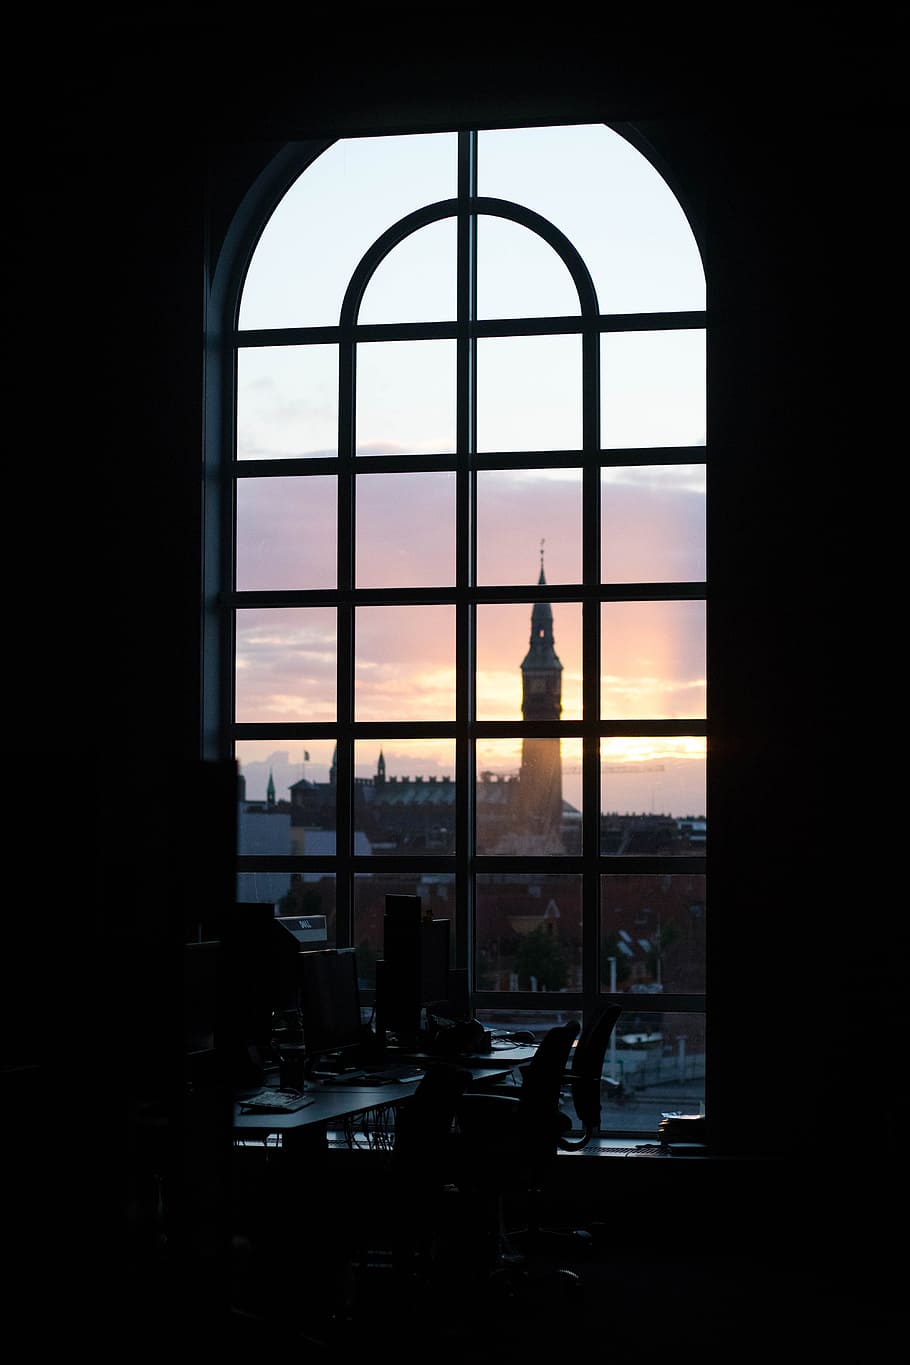 negro, enmarcado, claro, ventana de vidrio, frente, torre, dorado, hora, puesta de sol, edificio